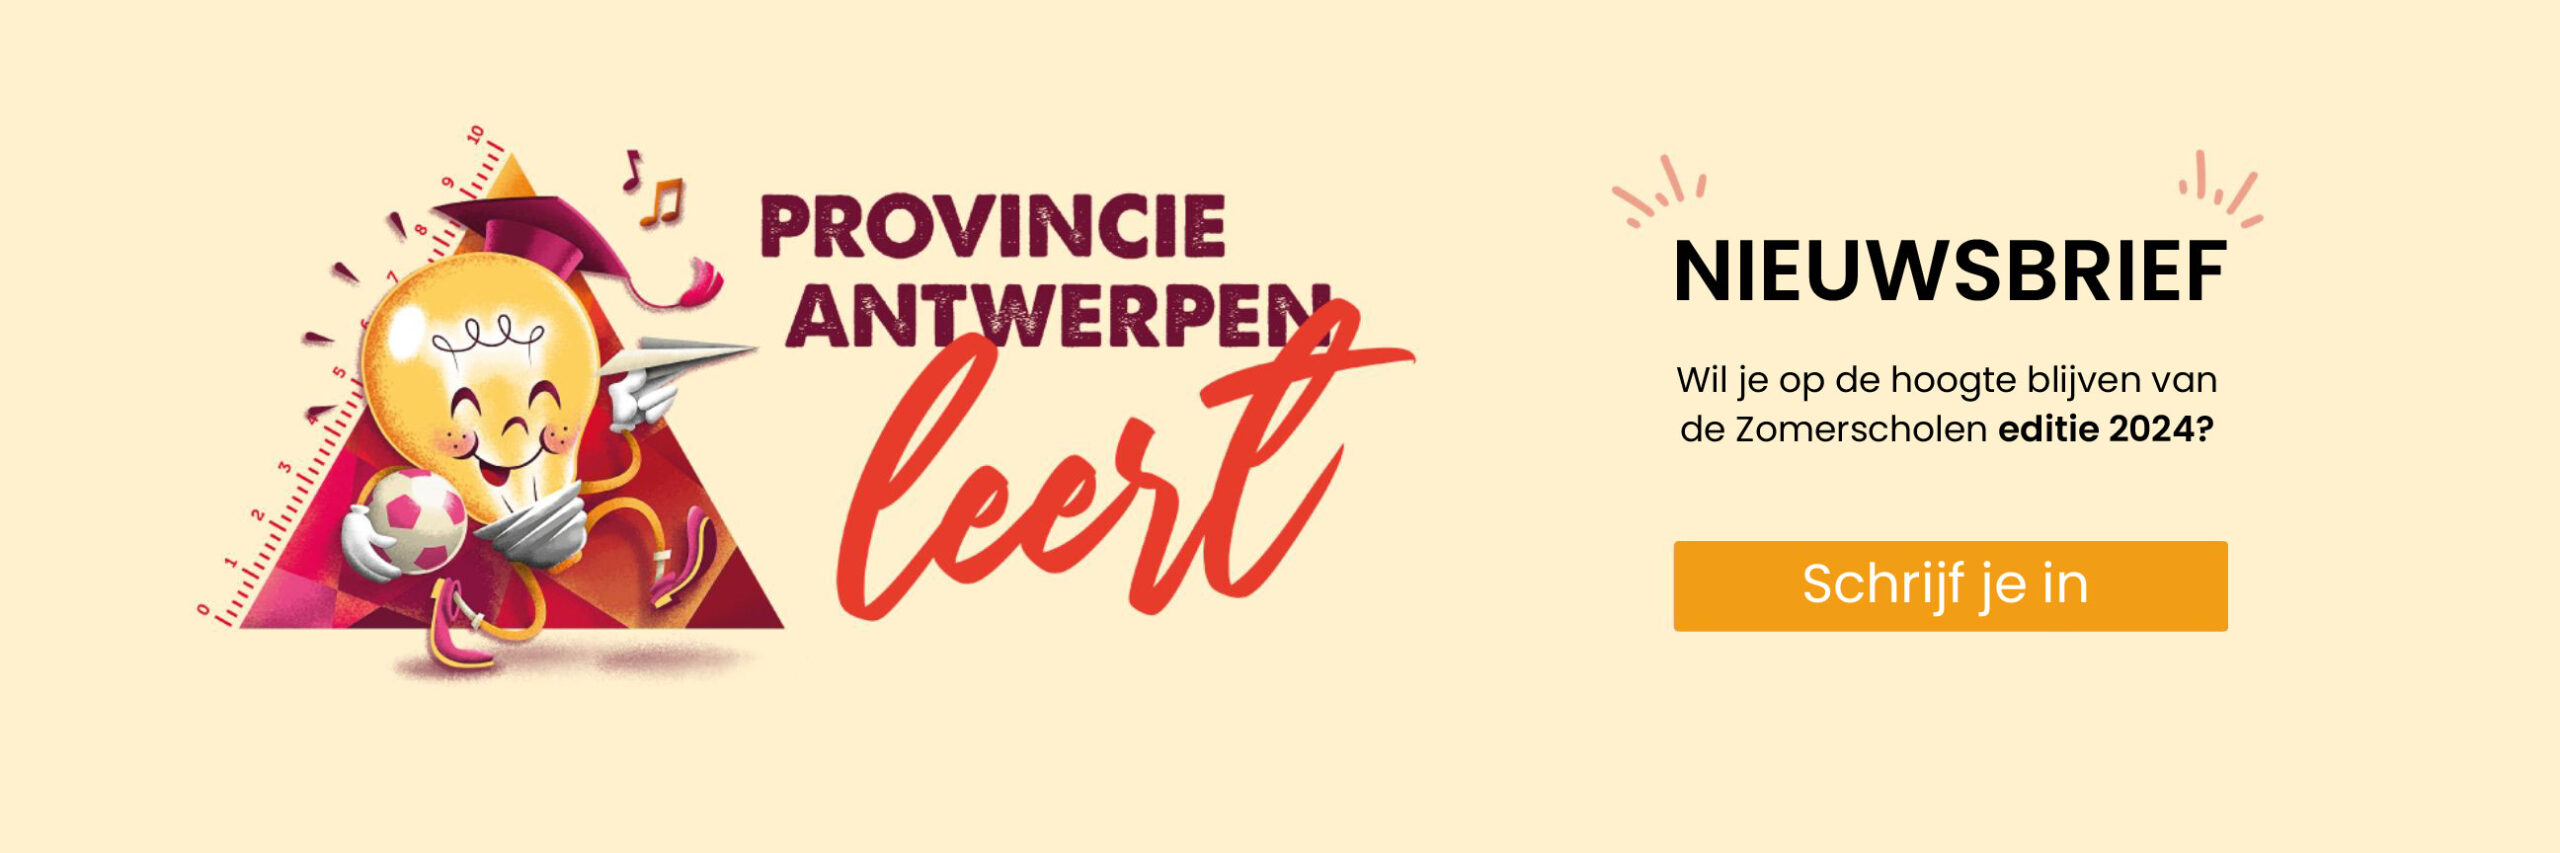 Inschrijven nieuwsbrief Provincie Antwerpen Leert